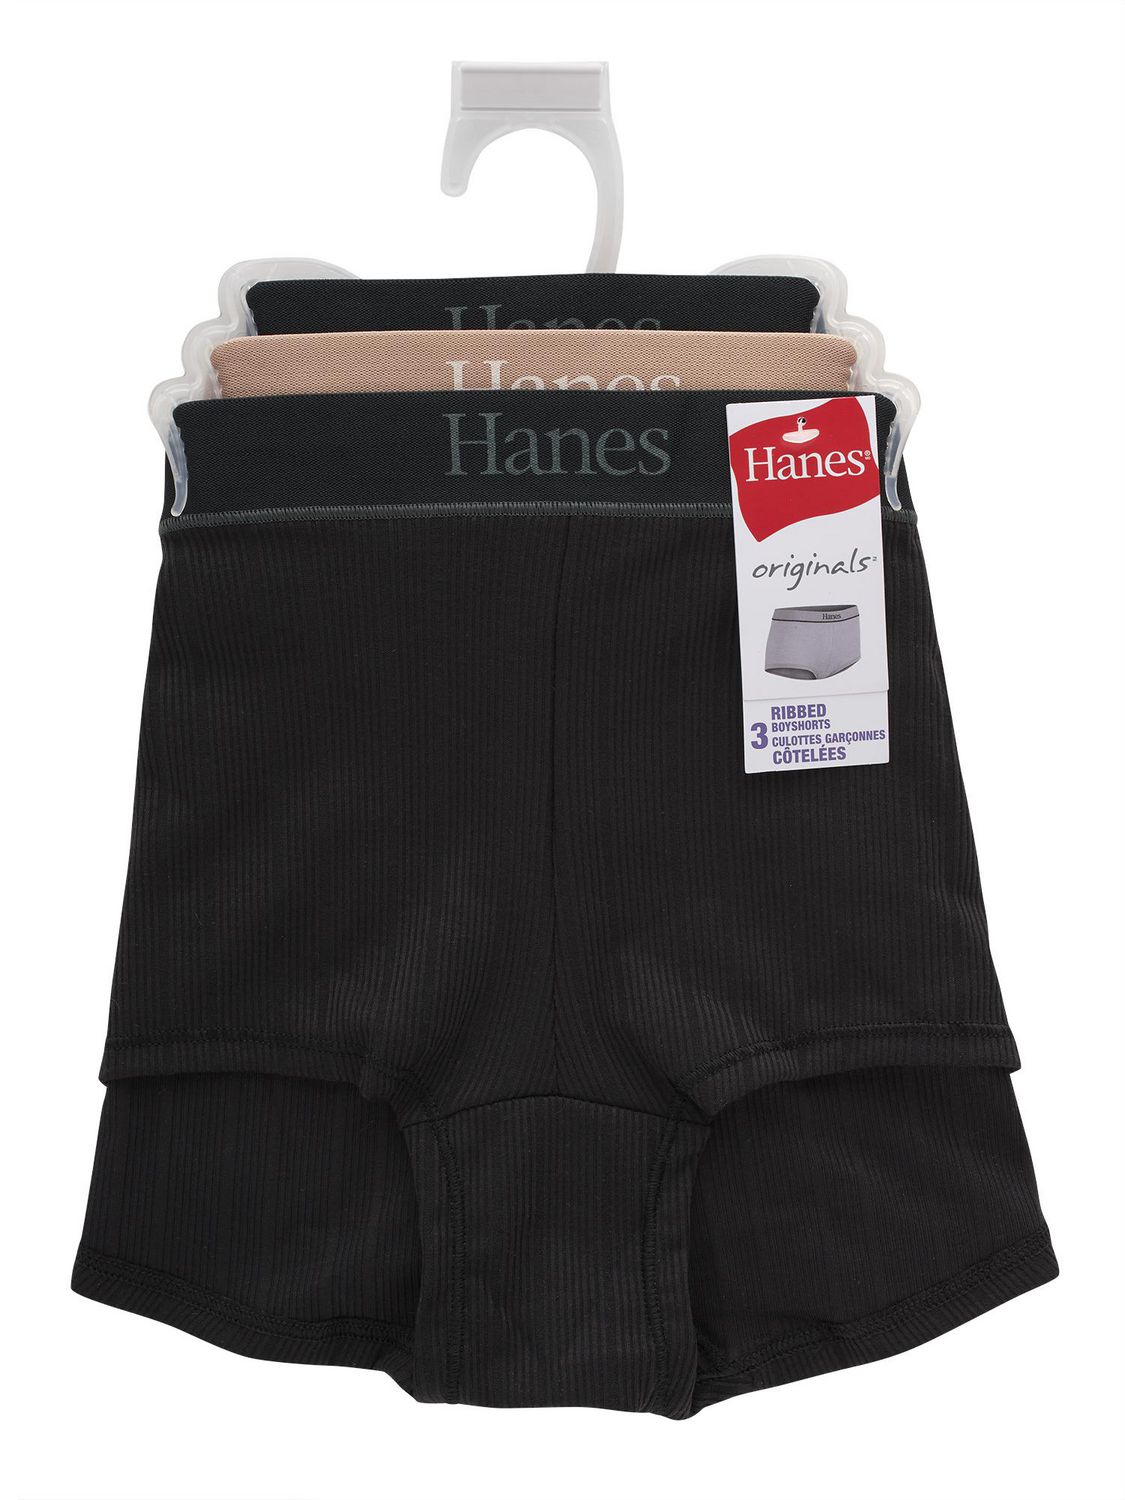 Hanes Originals Girls' Underwear Boyshorts Pack, Pink & Assorted, 5-Pack